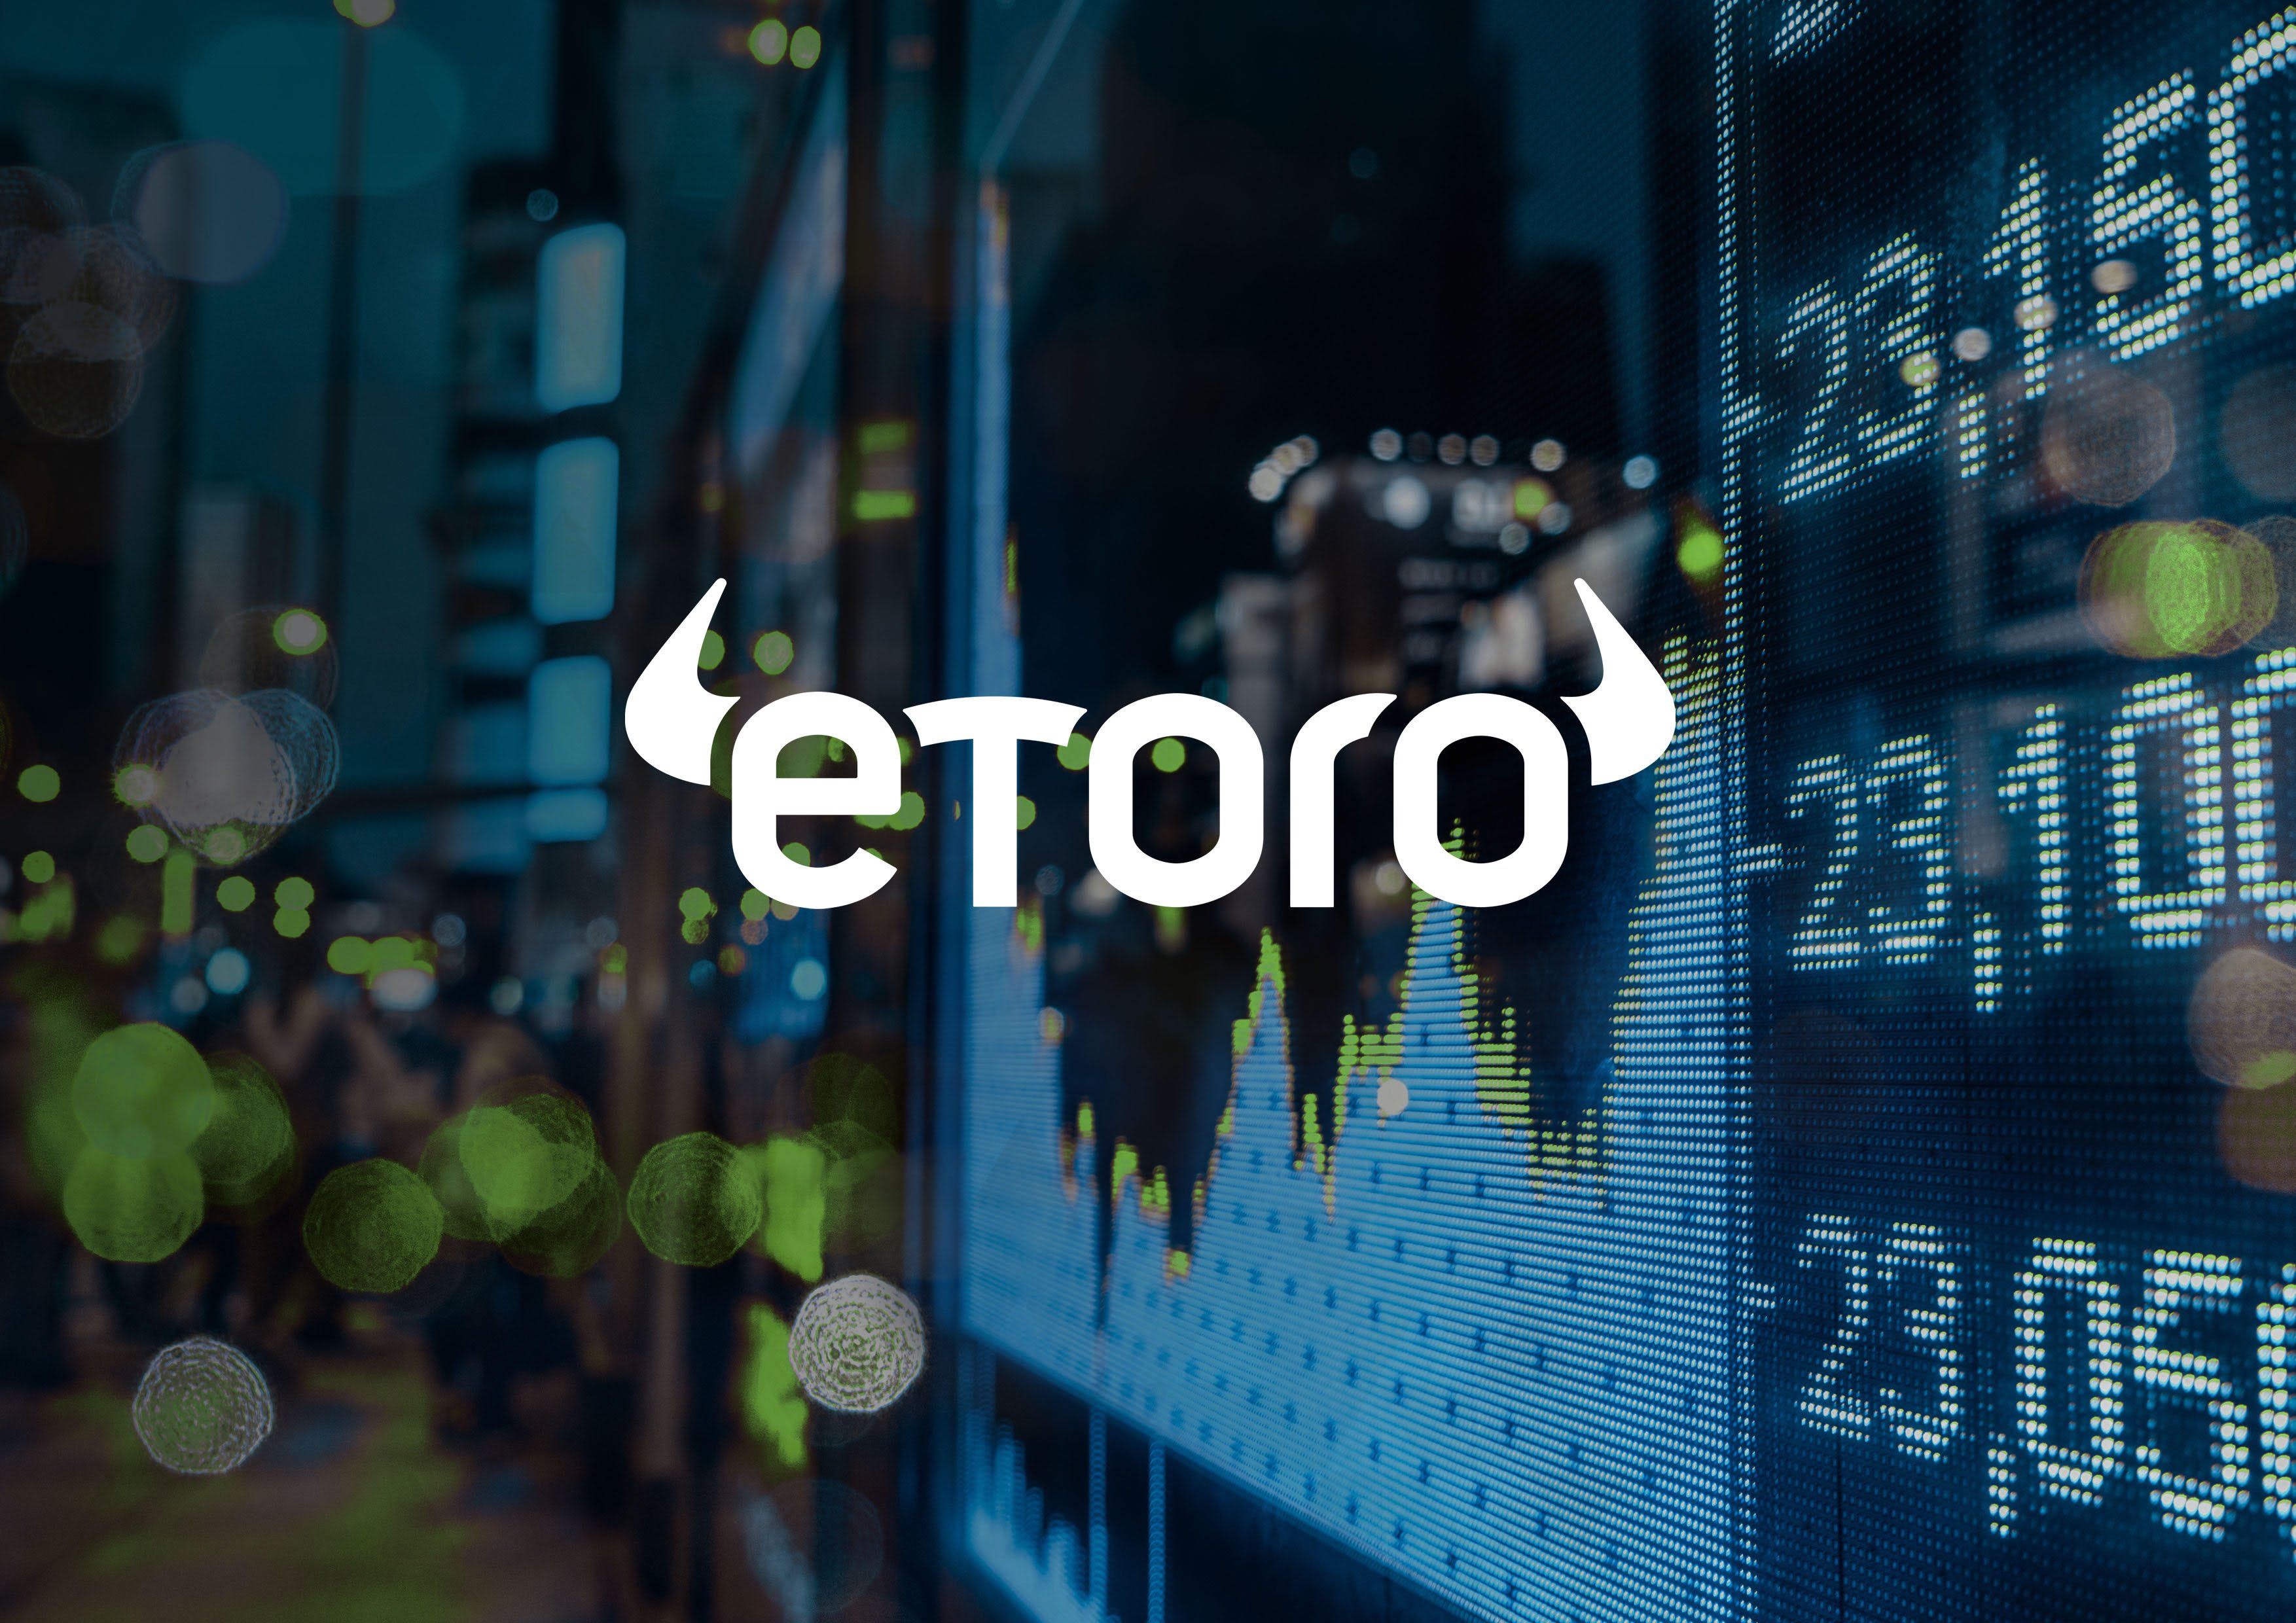 etoro, bitcoin, trading, markets, tariffs, crypto, etf